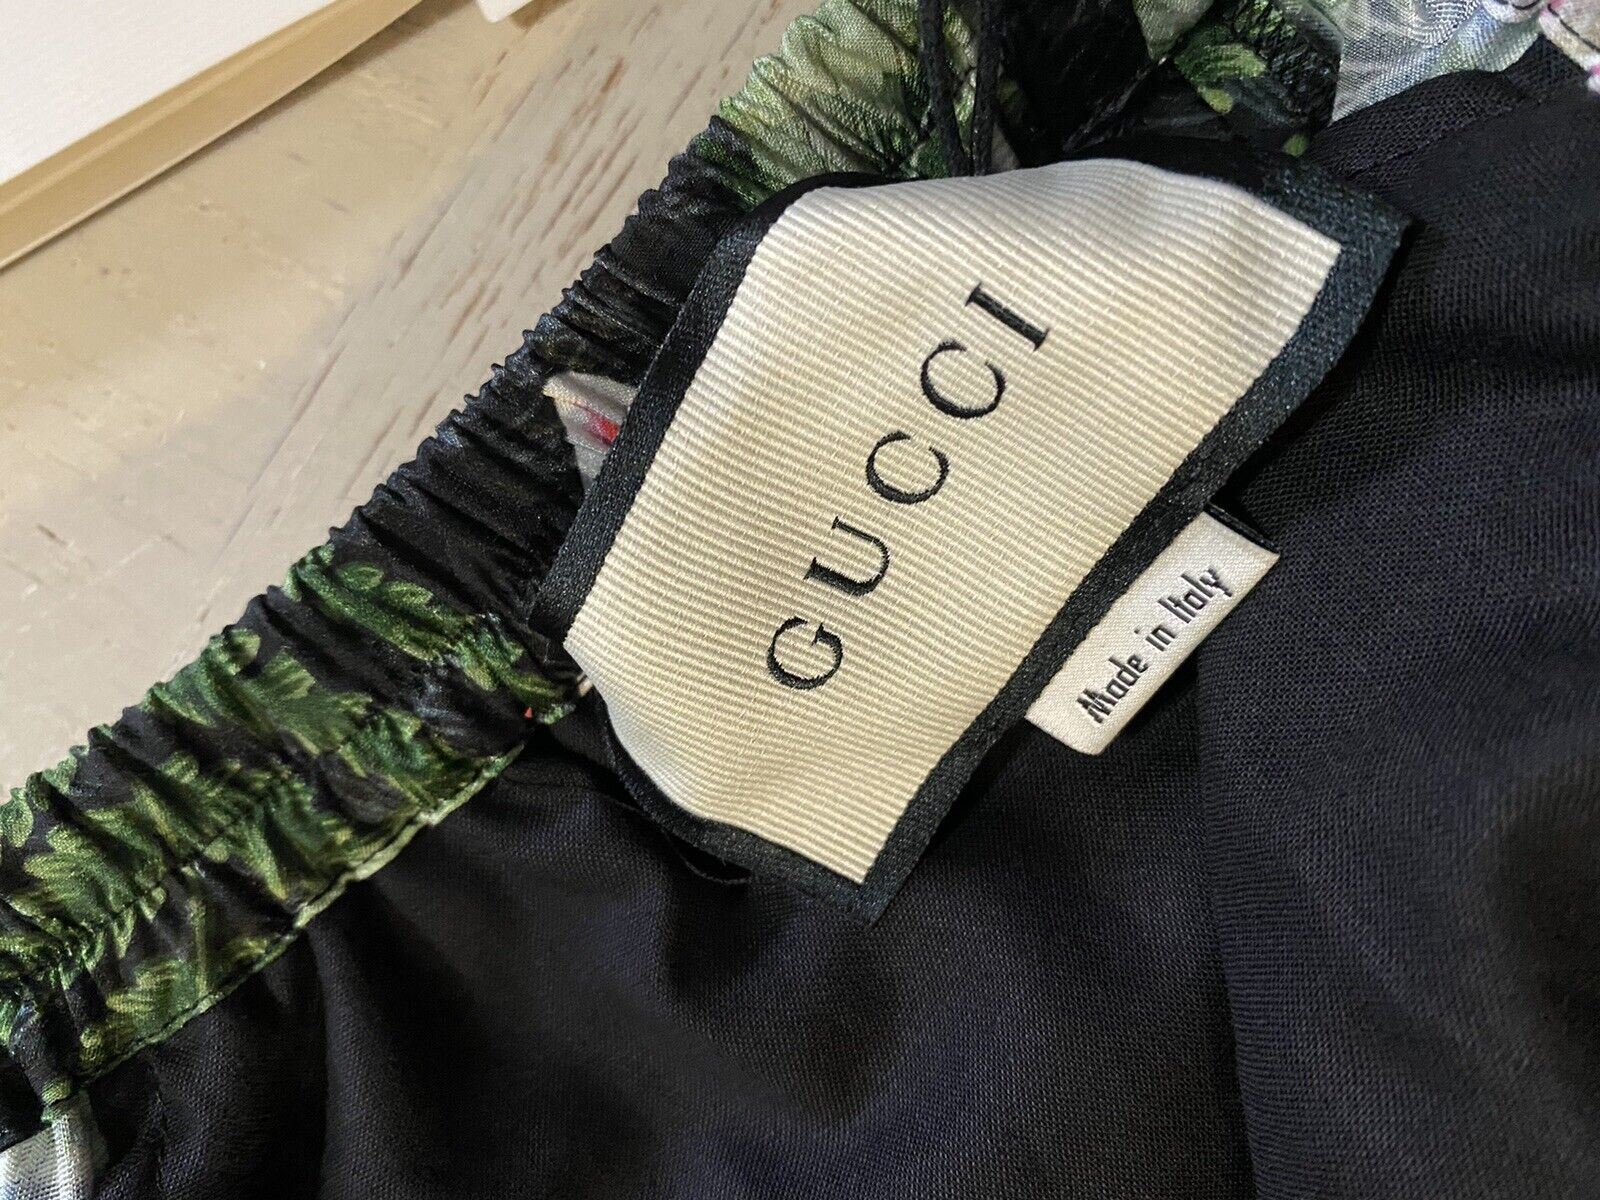 NWT $980 Gucci Men’s Gucci Soul Monogram Short Pents Black/Green/Mul. 36 US/52 E